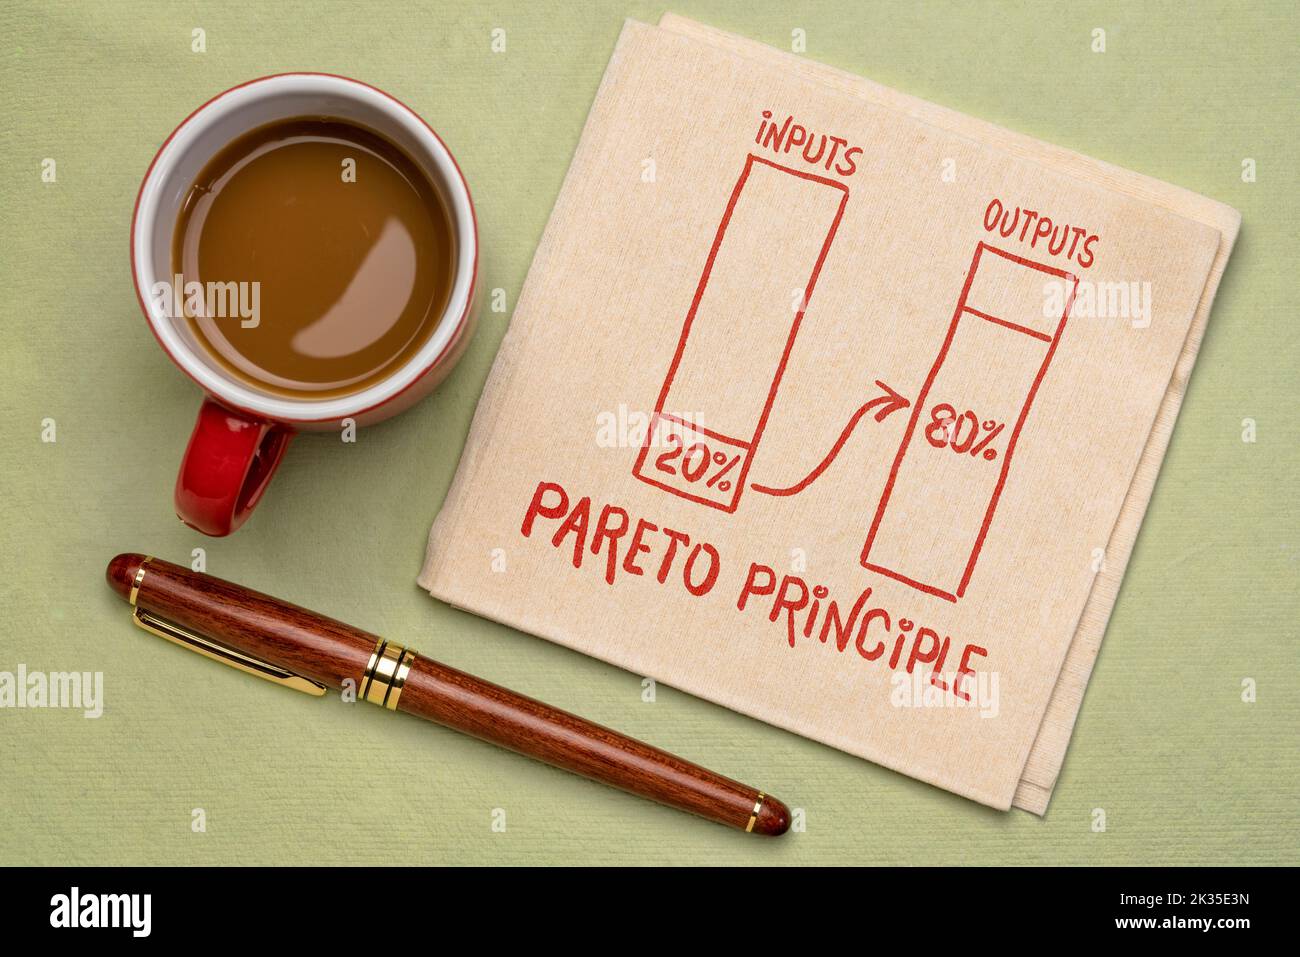 Concept de principe Pareto 80-20 - un croquis sur une serviette avec une tasse de café, des priorités et un concept de productivité Banque D'Images